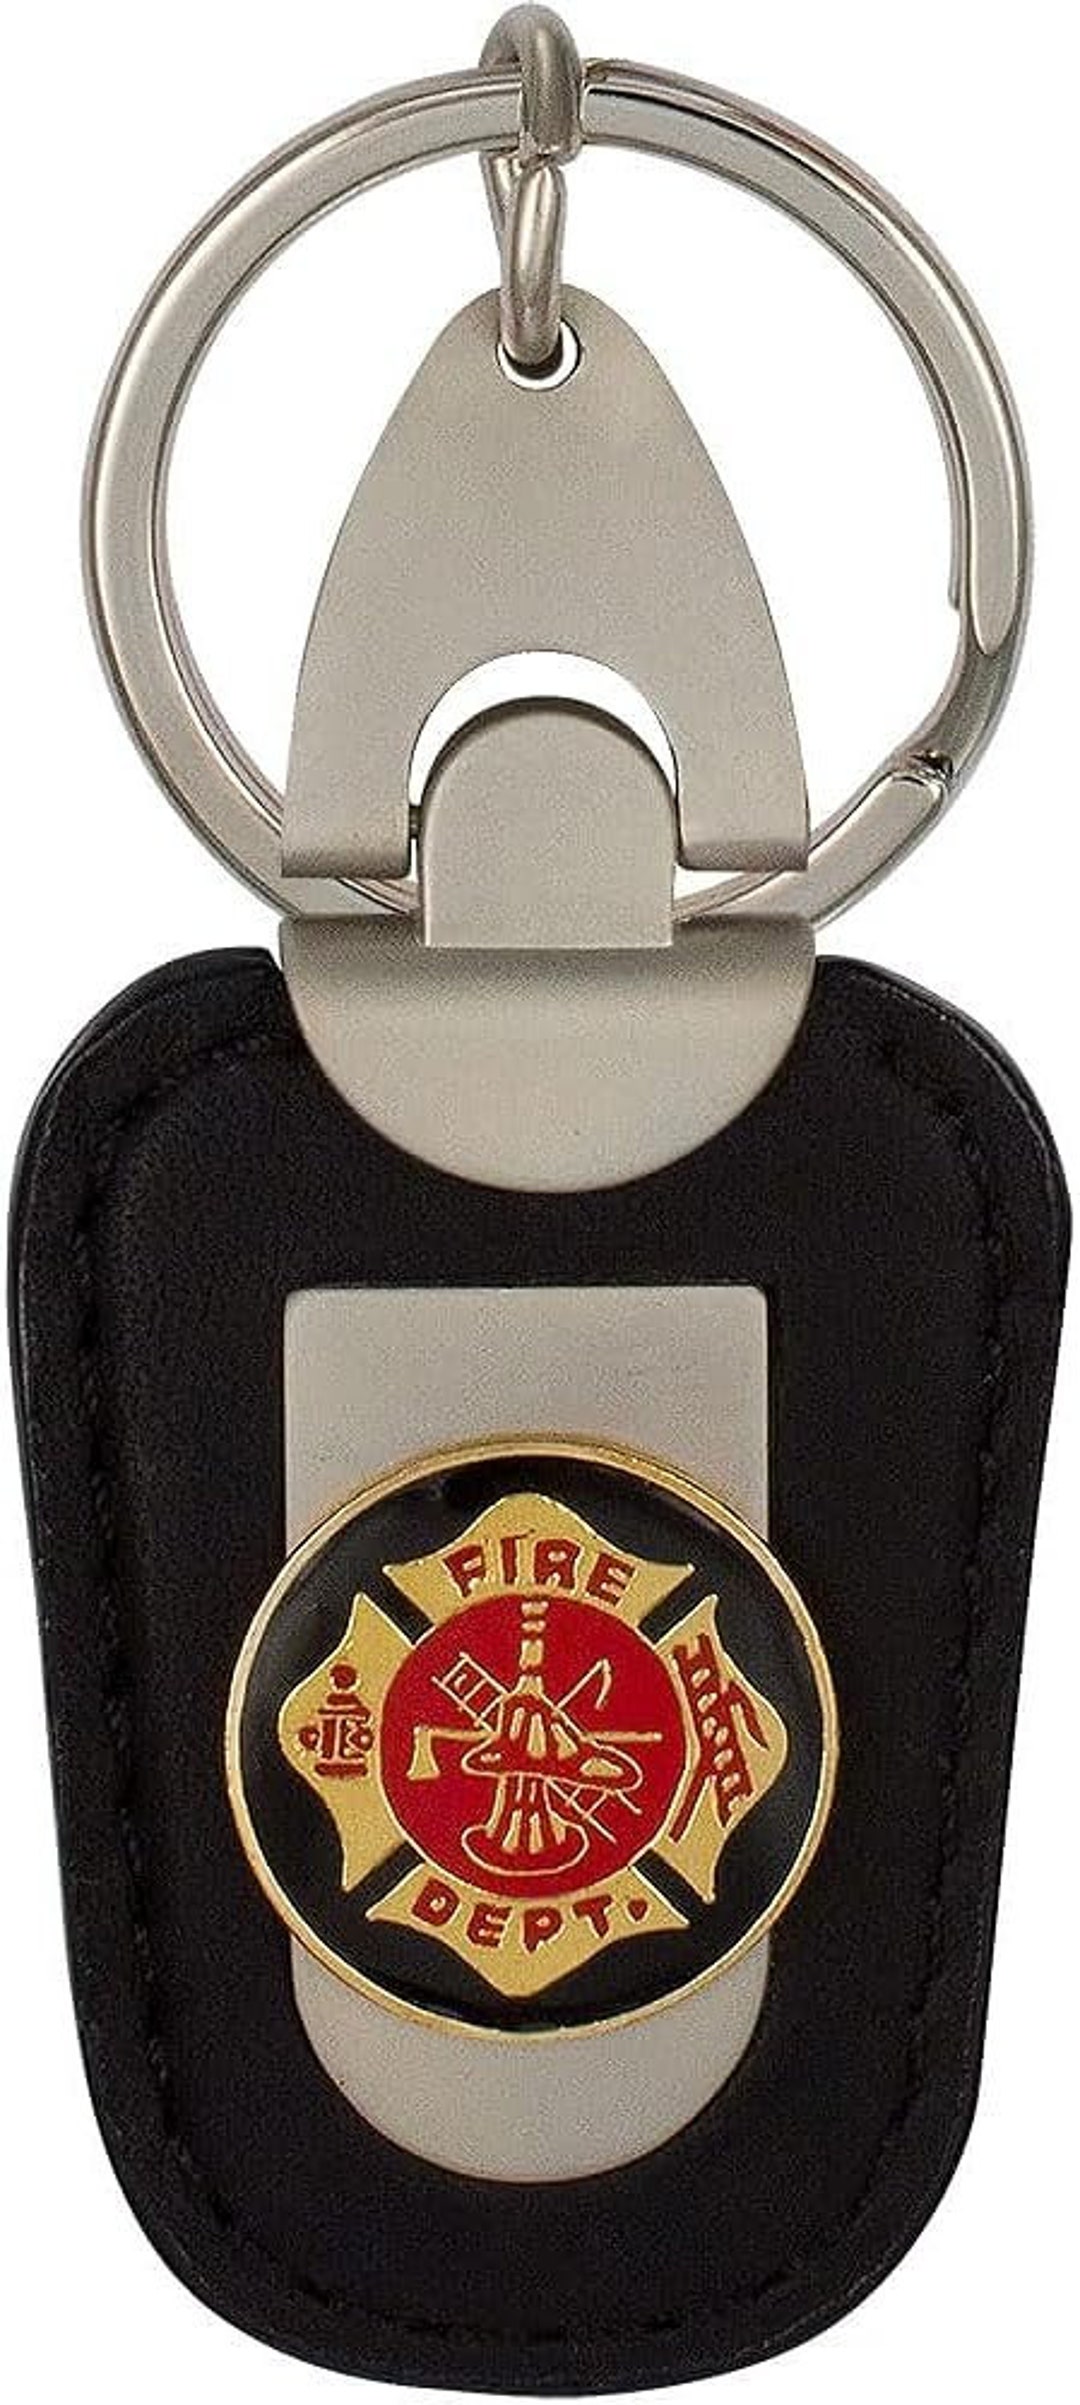 Feuerwehr Schlüsselanhänger, hochwertig bestickt